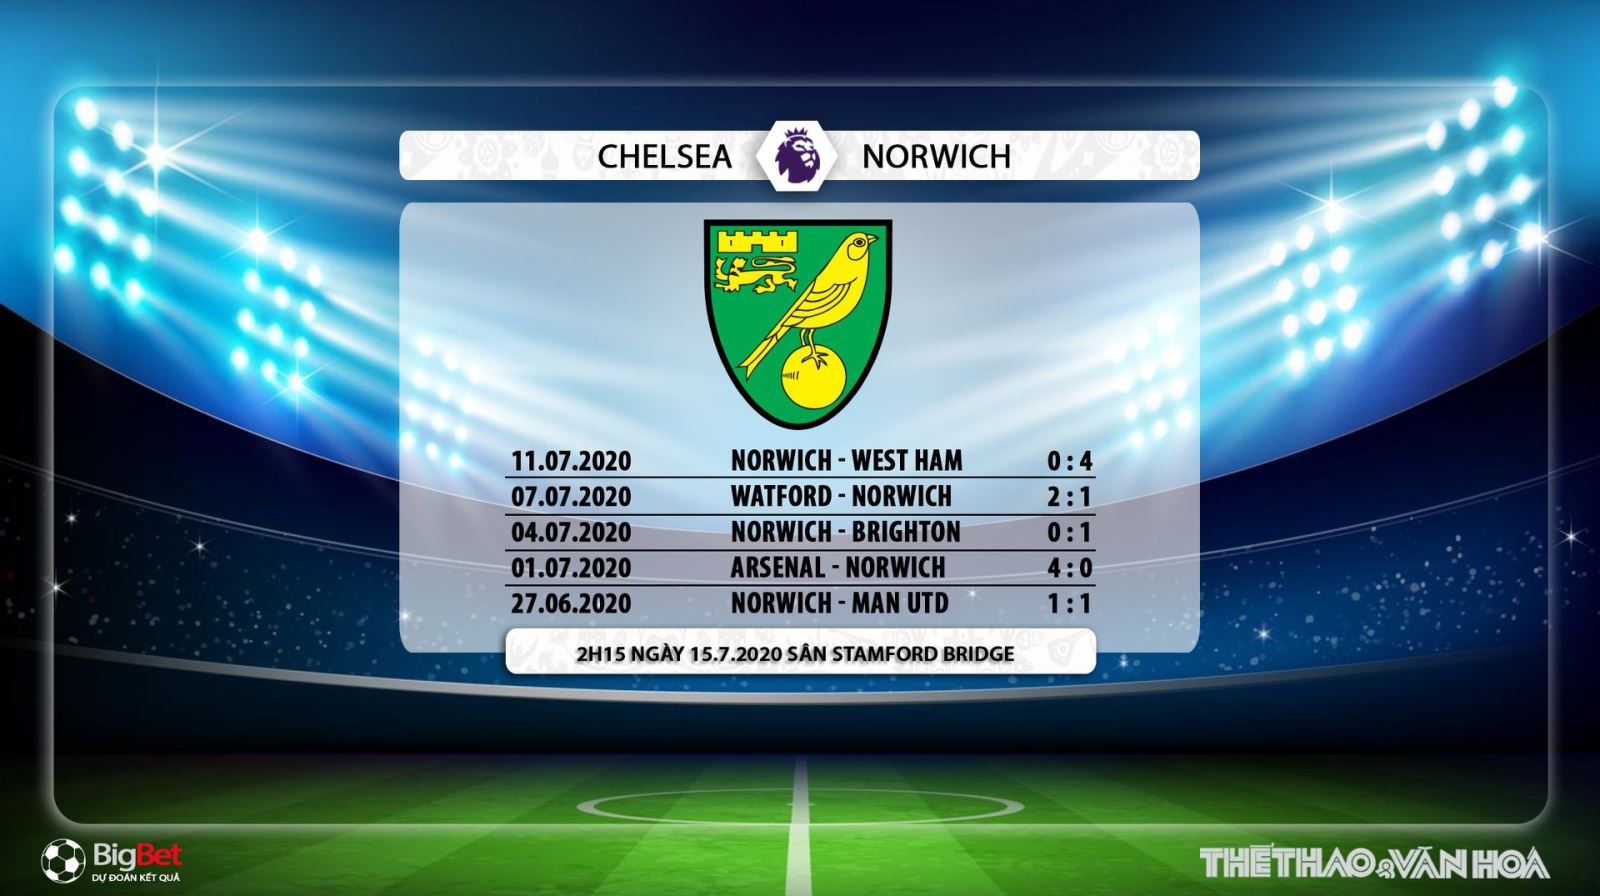 Chelsea vs Norwich, Chelsea, Norwich, trực tiếp bóng đá, bóng đá, trực tiếp, nhận định bóng đá, kèo bóng đá, nhận định bóng đá Chelsea vs Norwich